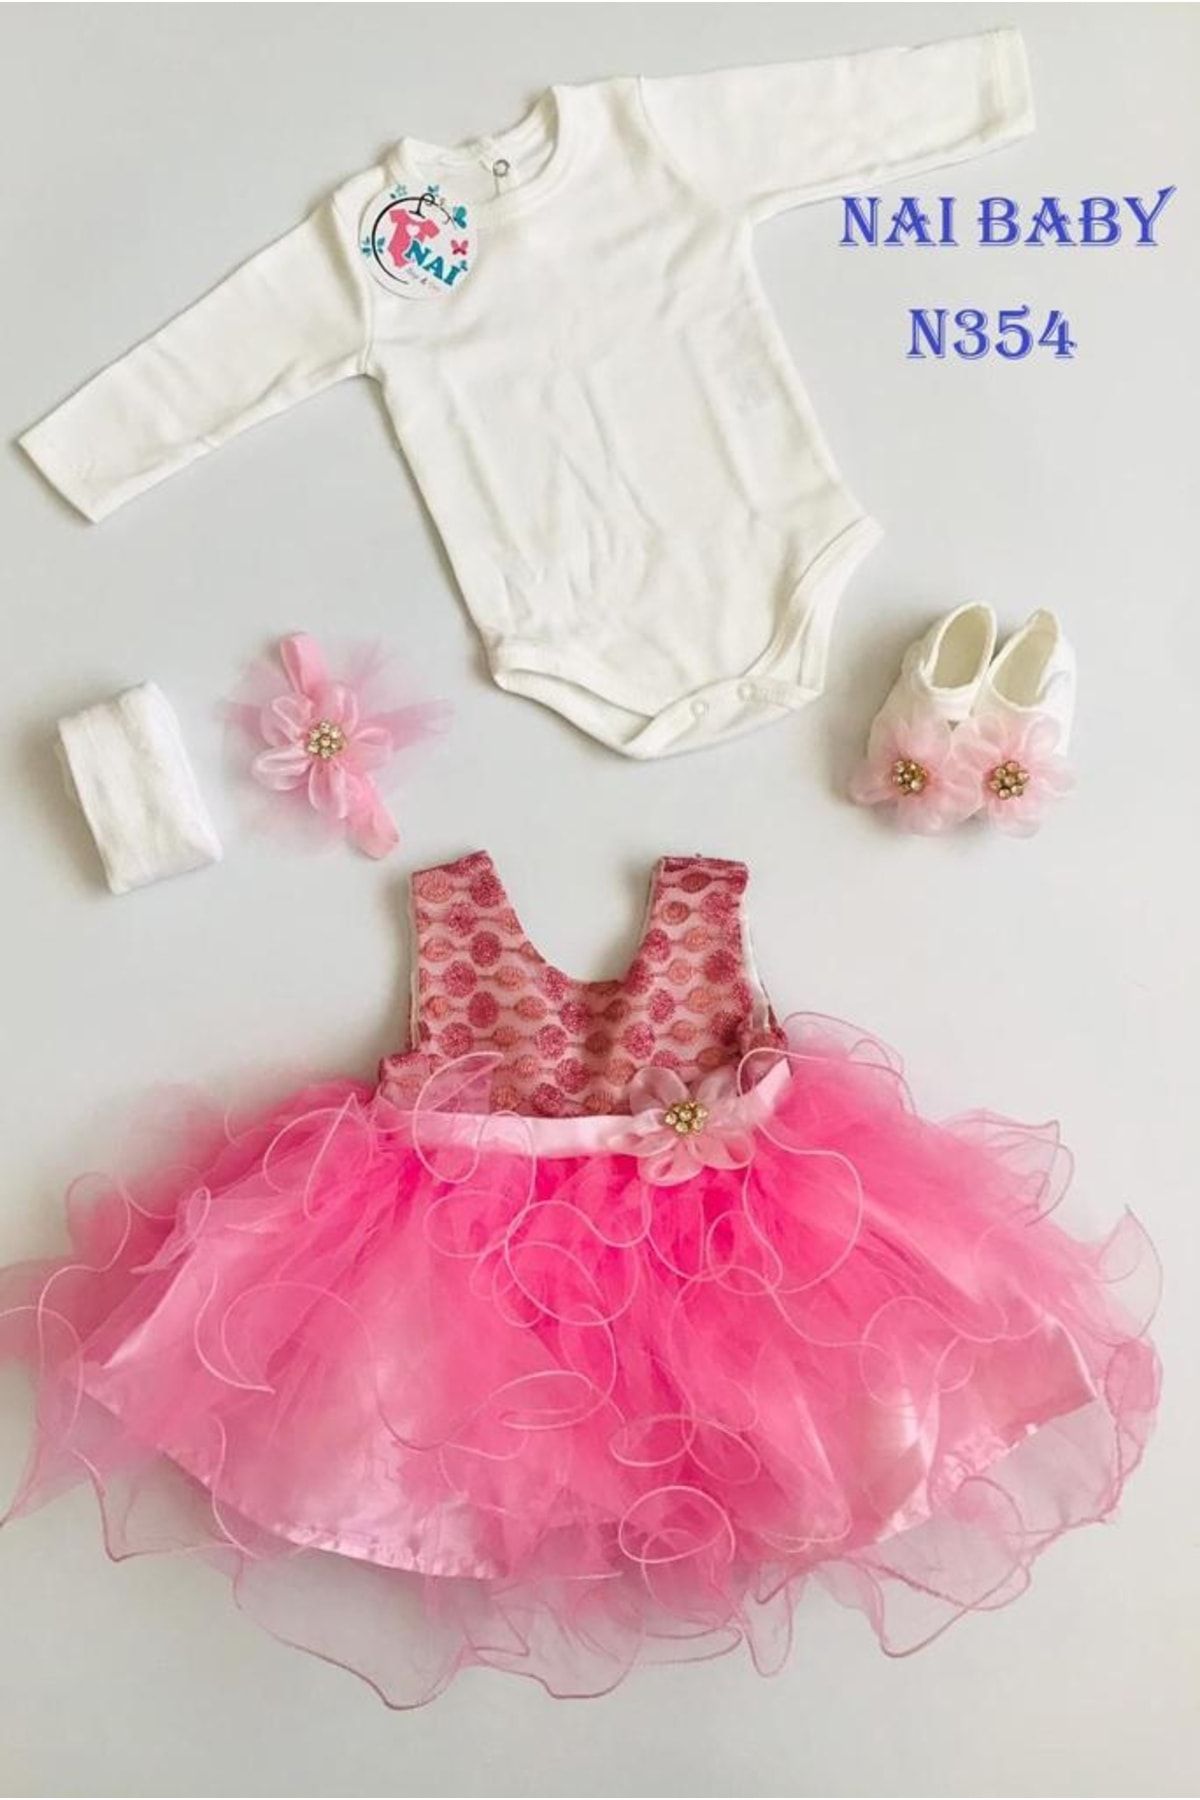 Nai baby Kız Bebek Mevlütlük Özel Gün Kıyafeti Hediyelik Bayramlık